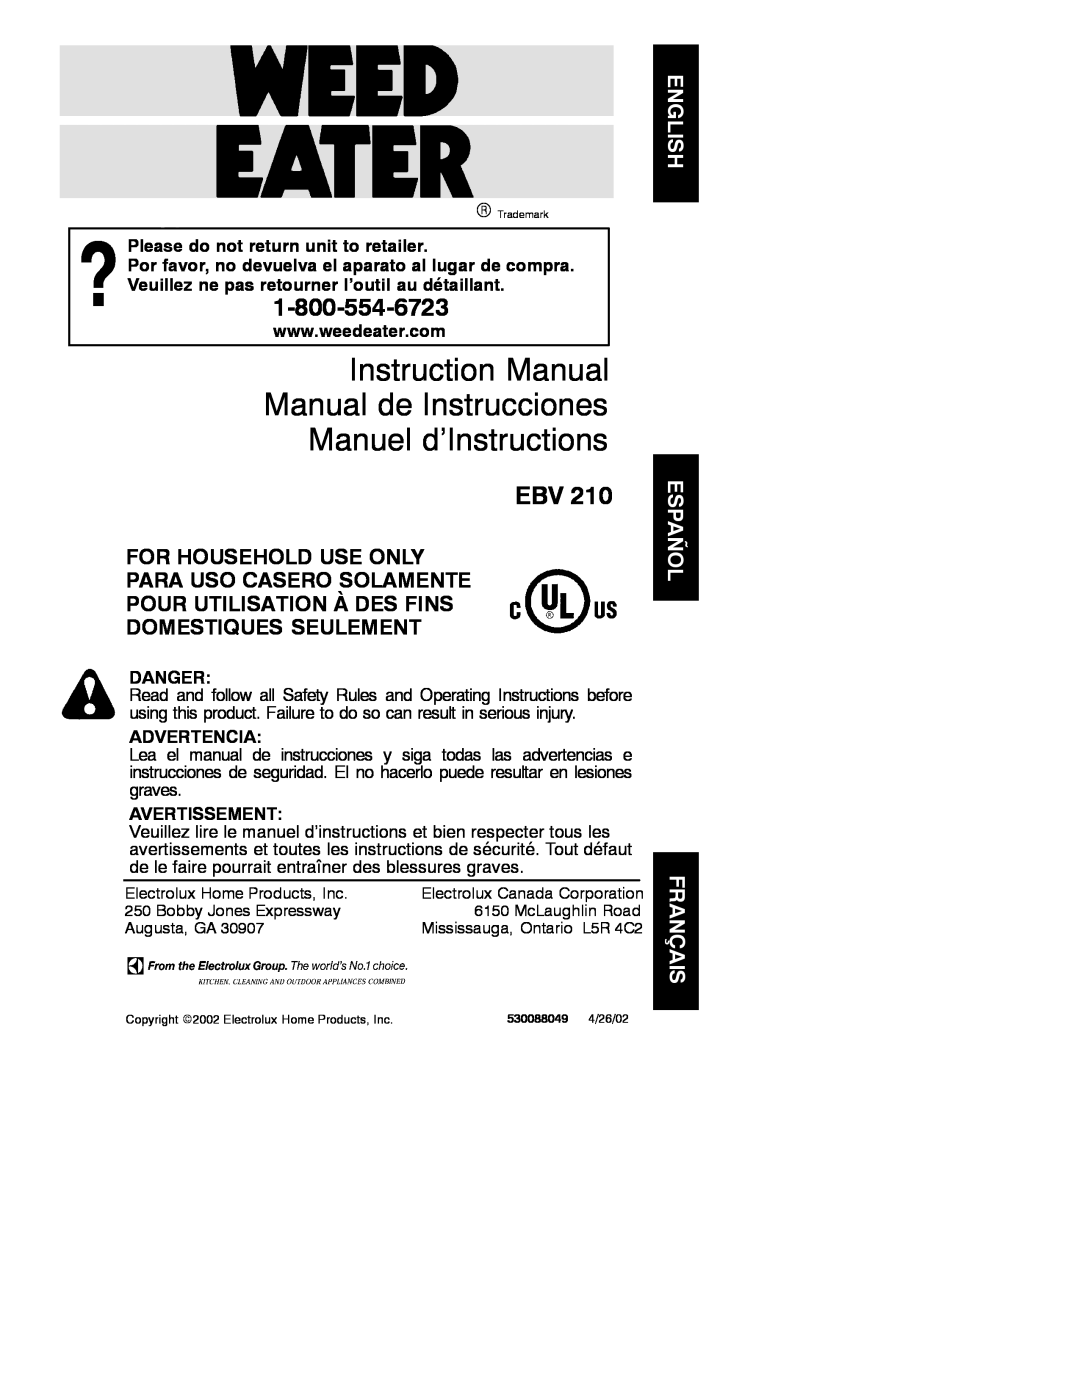 Poulan EBV 210 instruction manual Please do not return unit to retailer, Danger, Advertencia, Avertissement 